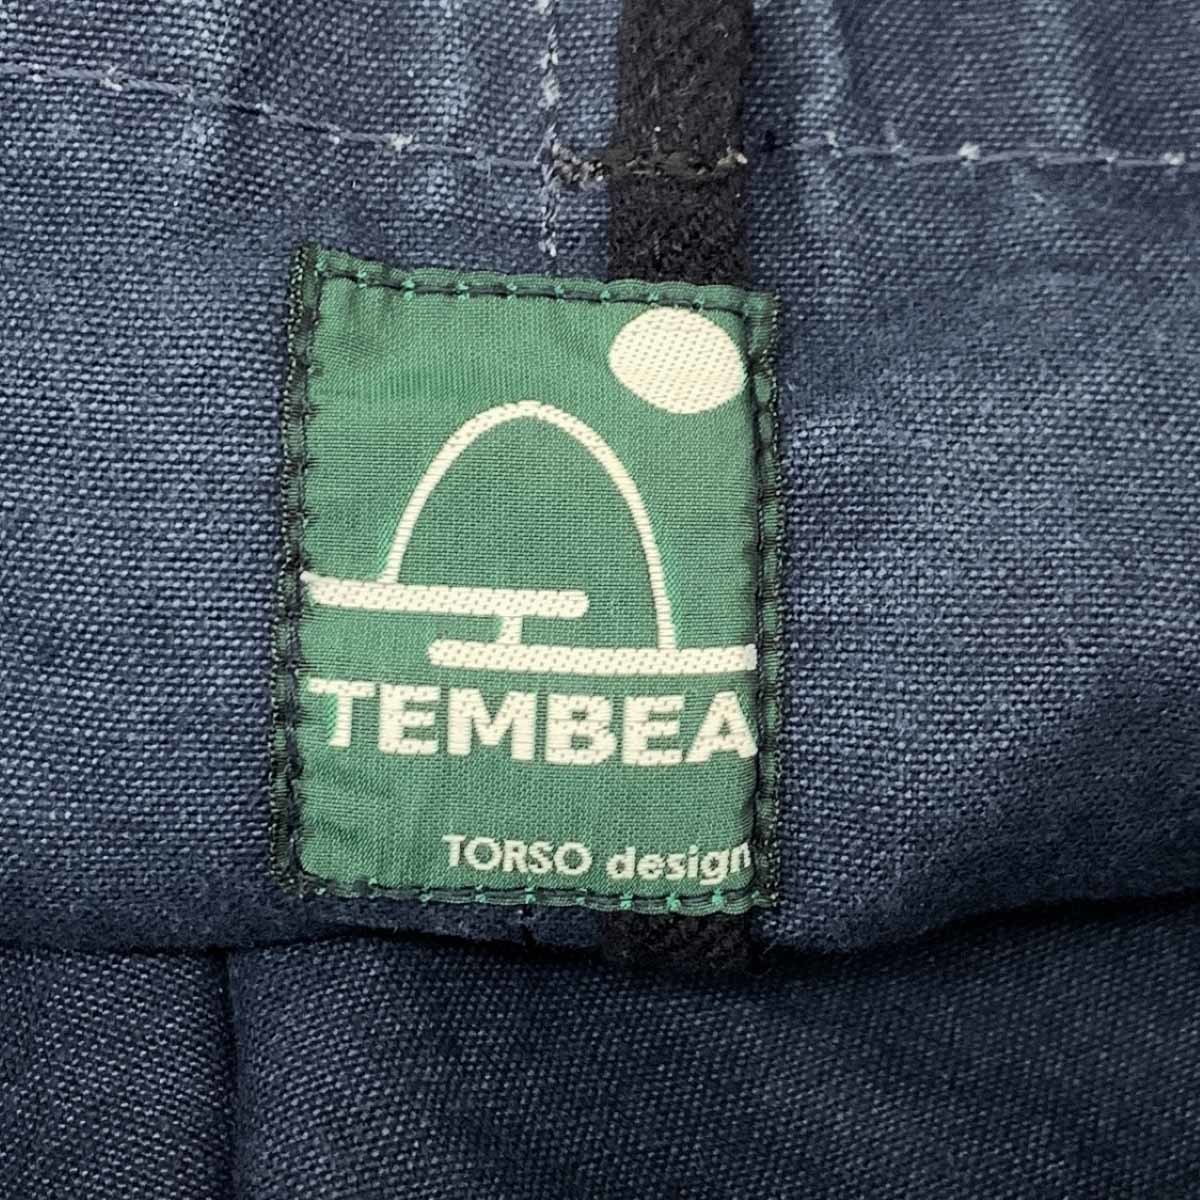 ◆TEMBEA テンベア トートバッグ◆ ネイビー リネン レディース バケットトート 肩掛け bag 鞄_画像6